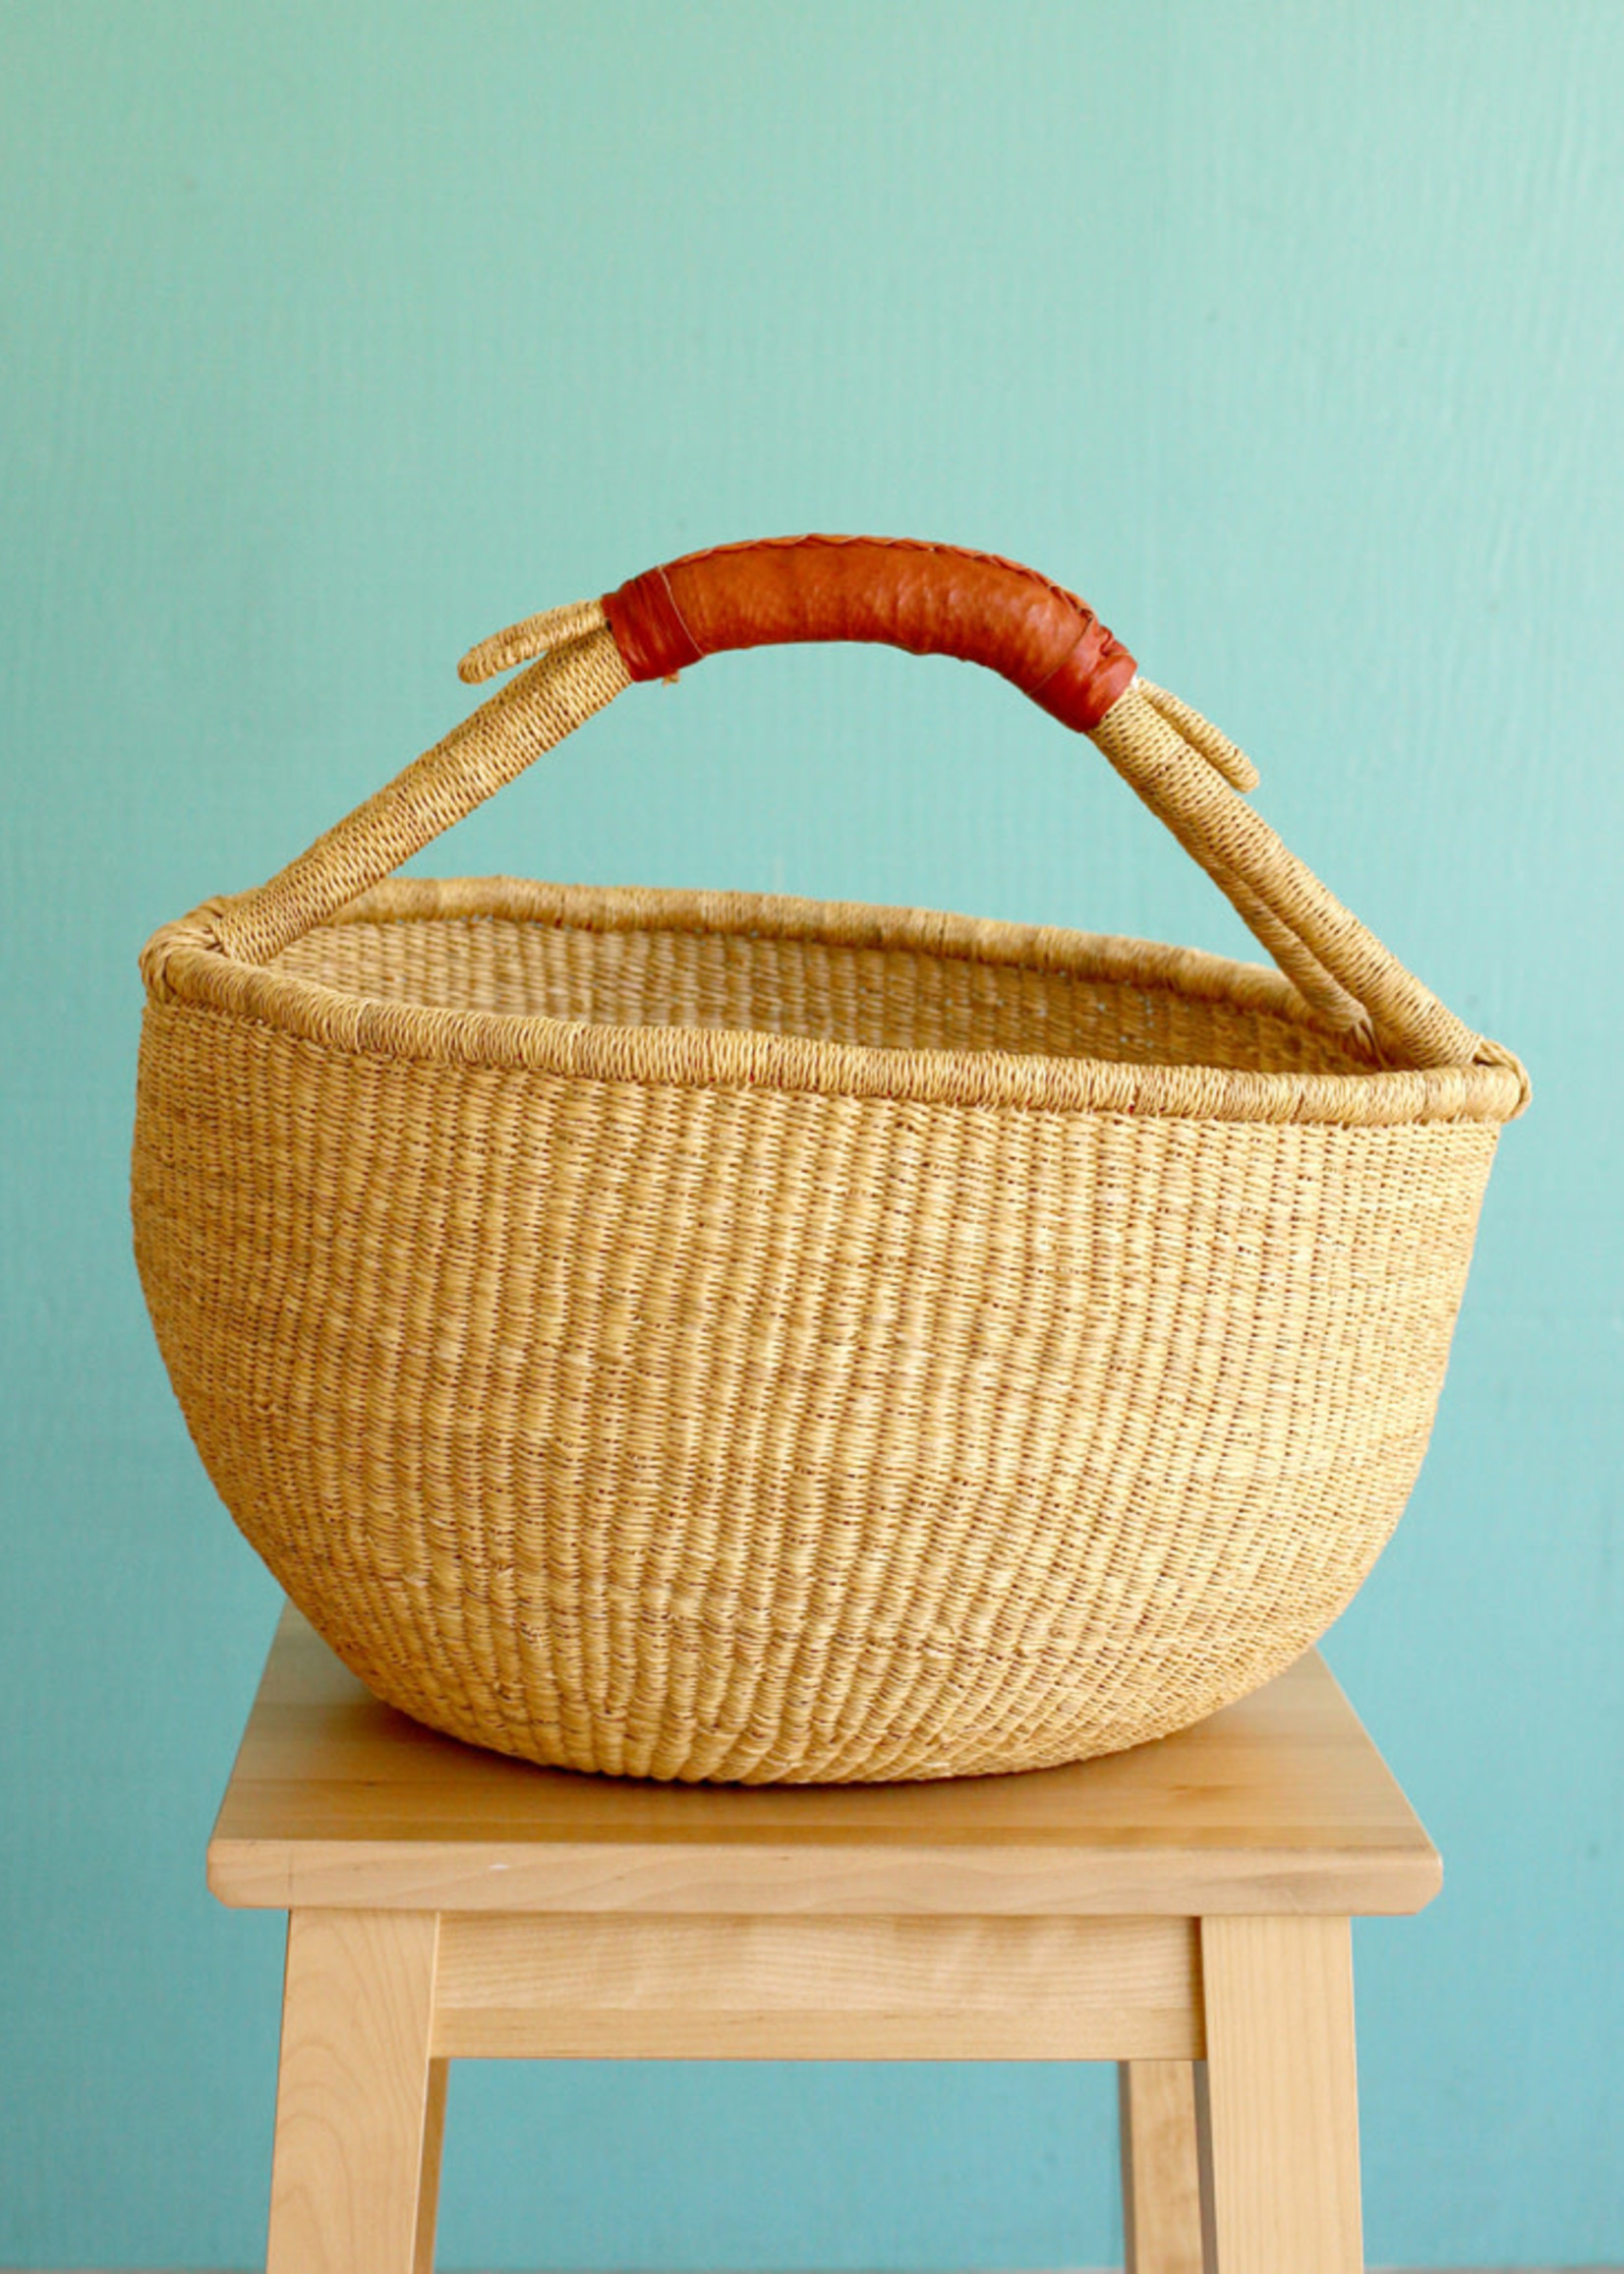 African Market Baskets Natural Market Basket